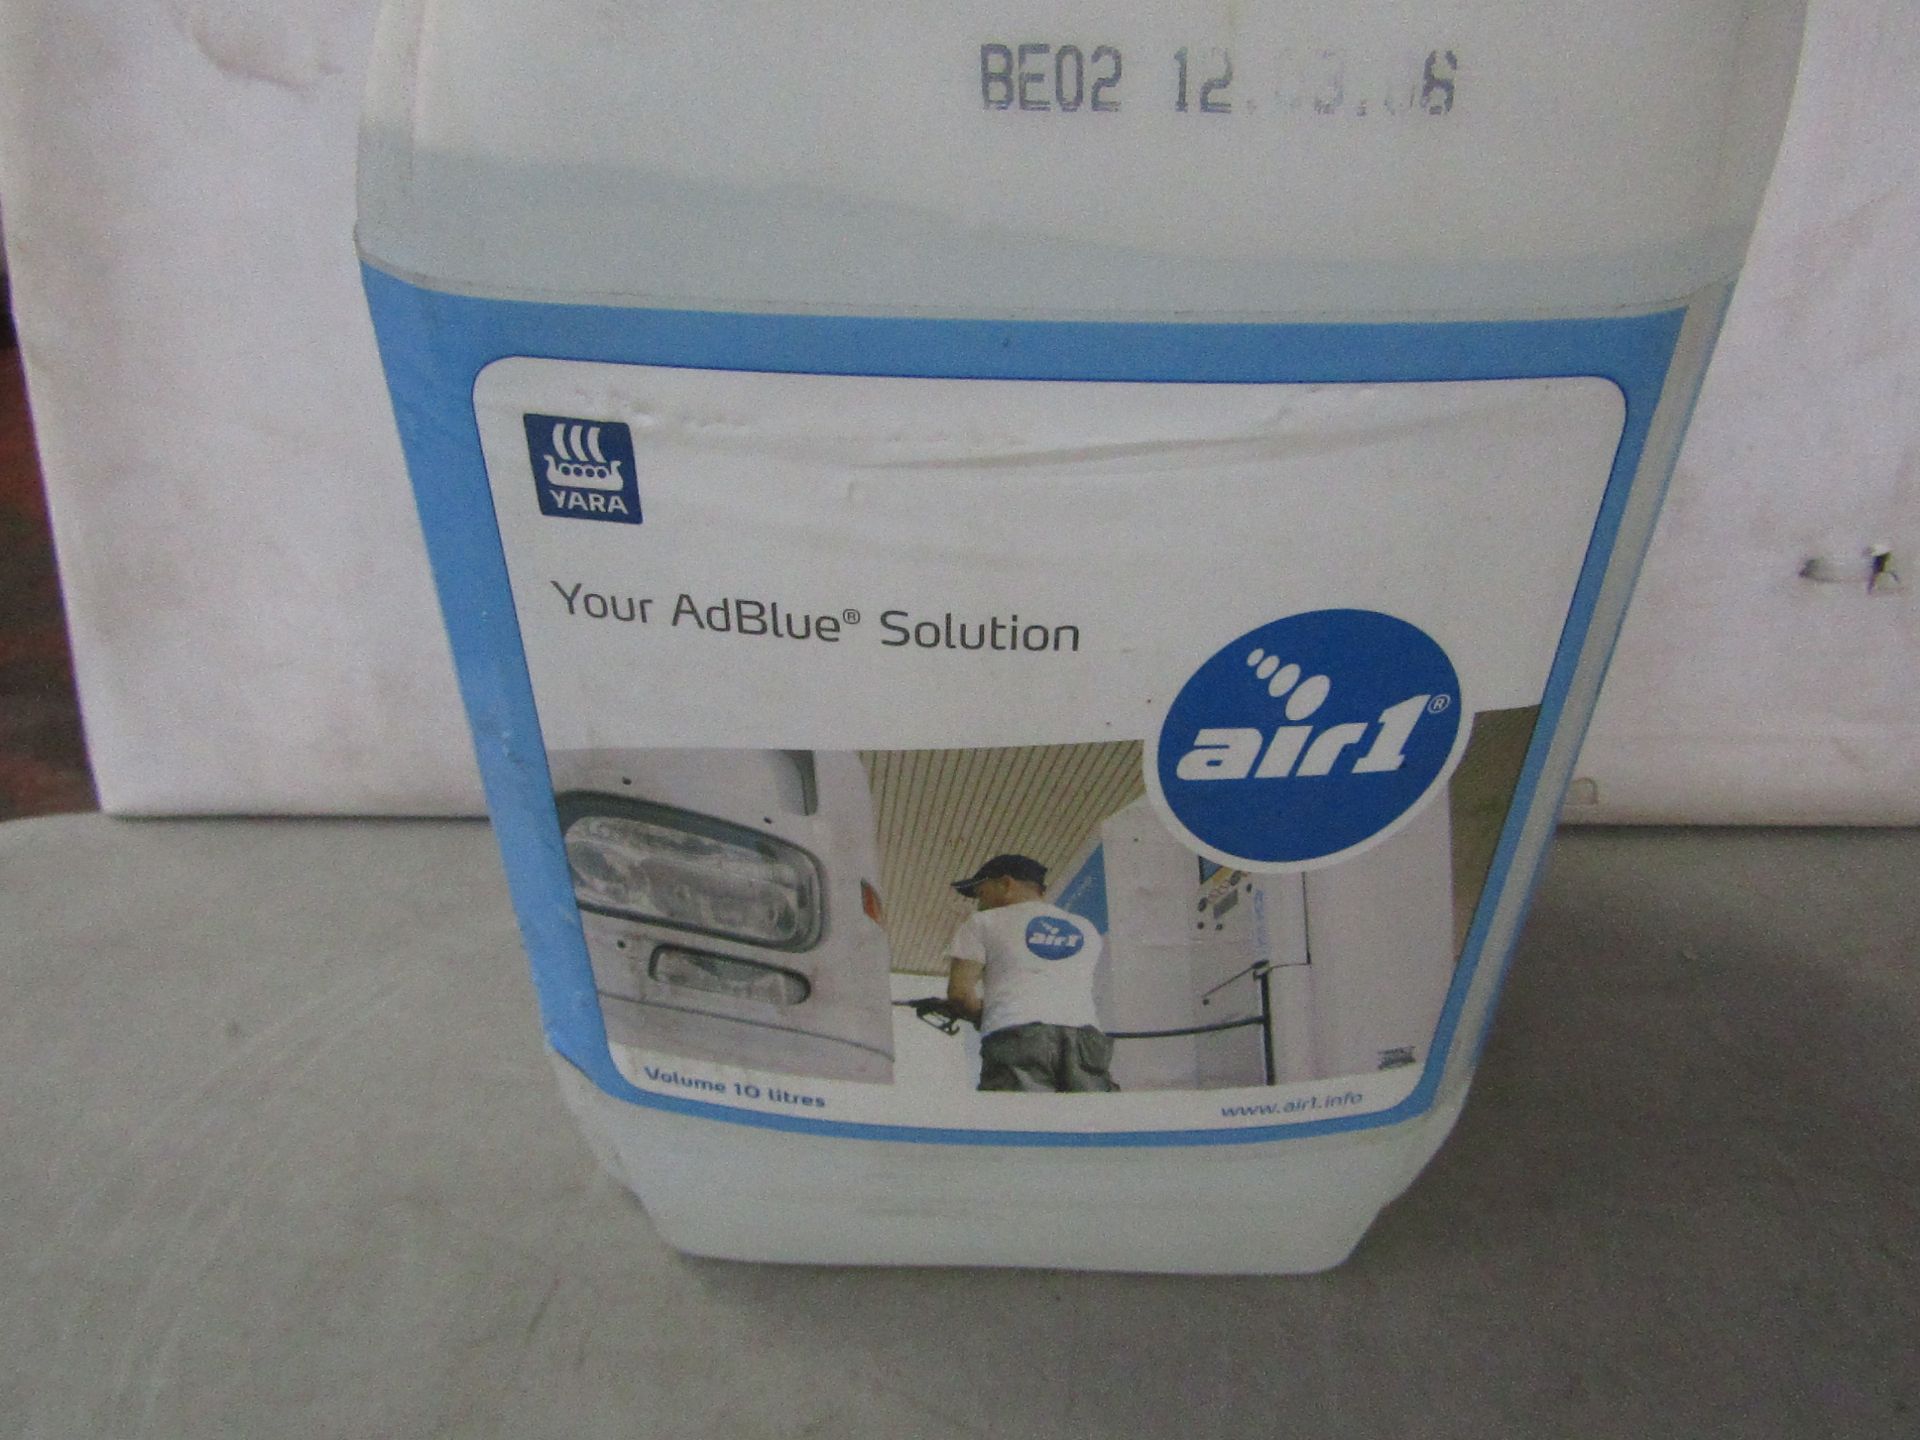 Air1 - Adblue Solution - 10 Litres - Unused.